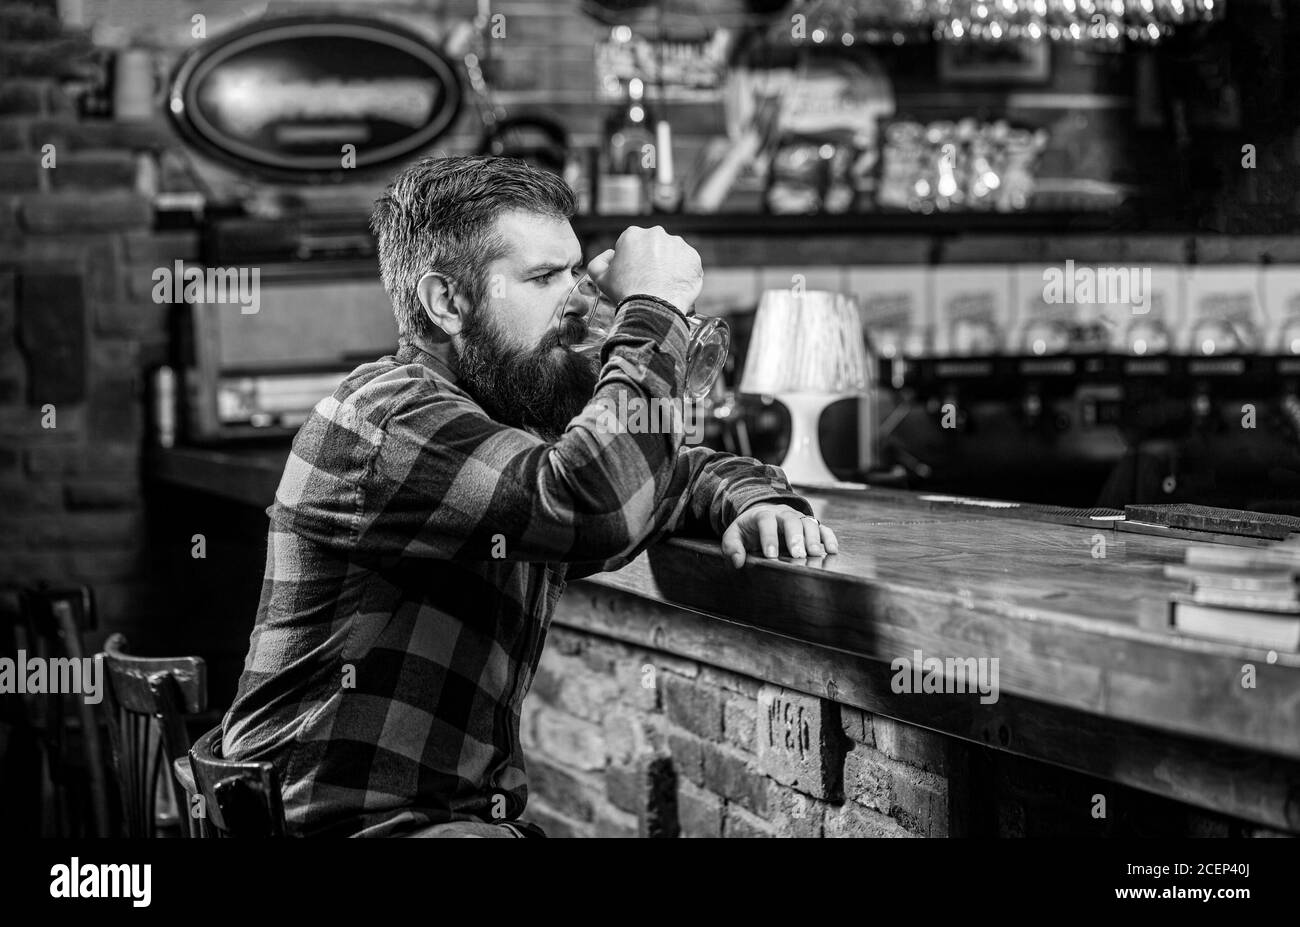 L'uomo beve birre al banco del bar. Uomo con birra. L'hipster ribassato tiene un bicchiere di birra. Birreria. Un ragazzo alla moda al bar pub. Bianco e nero Foto Stock